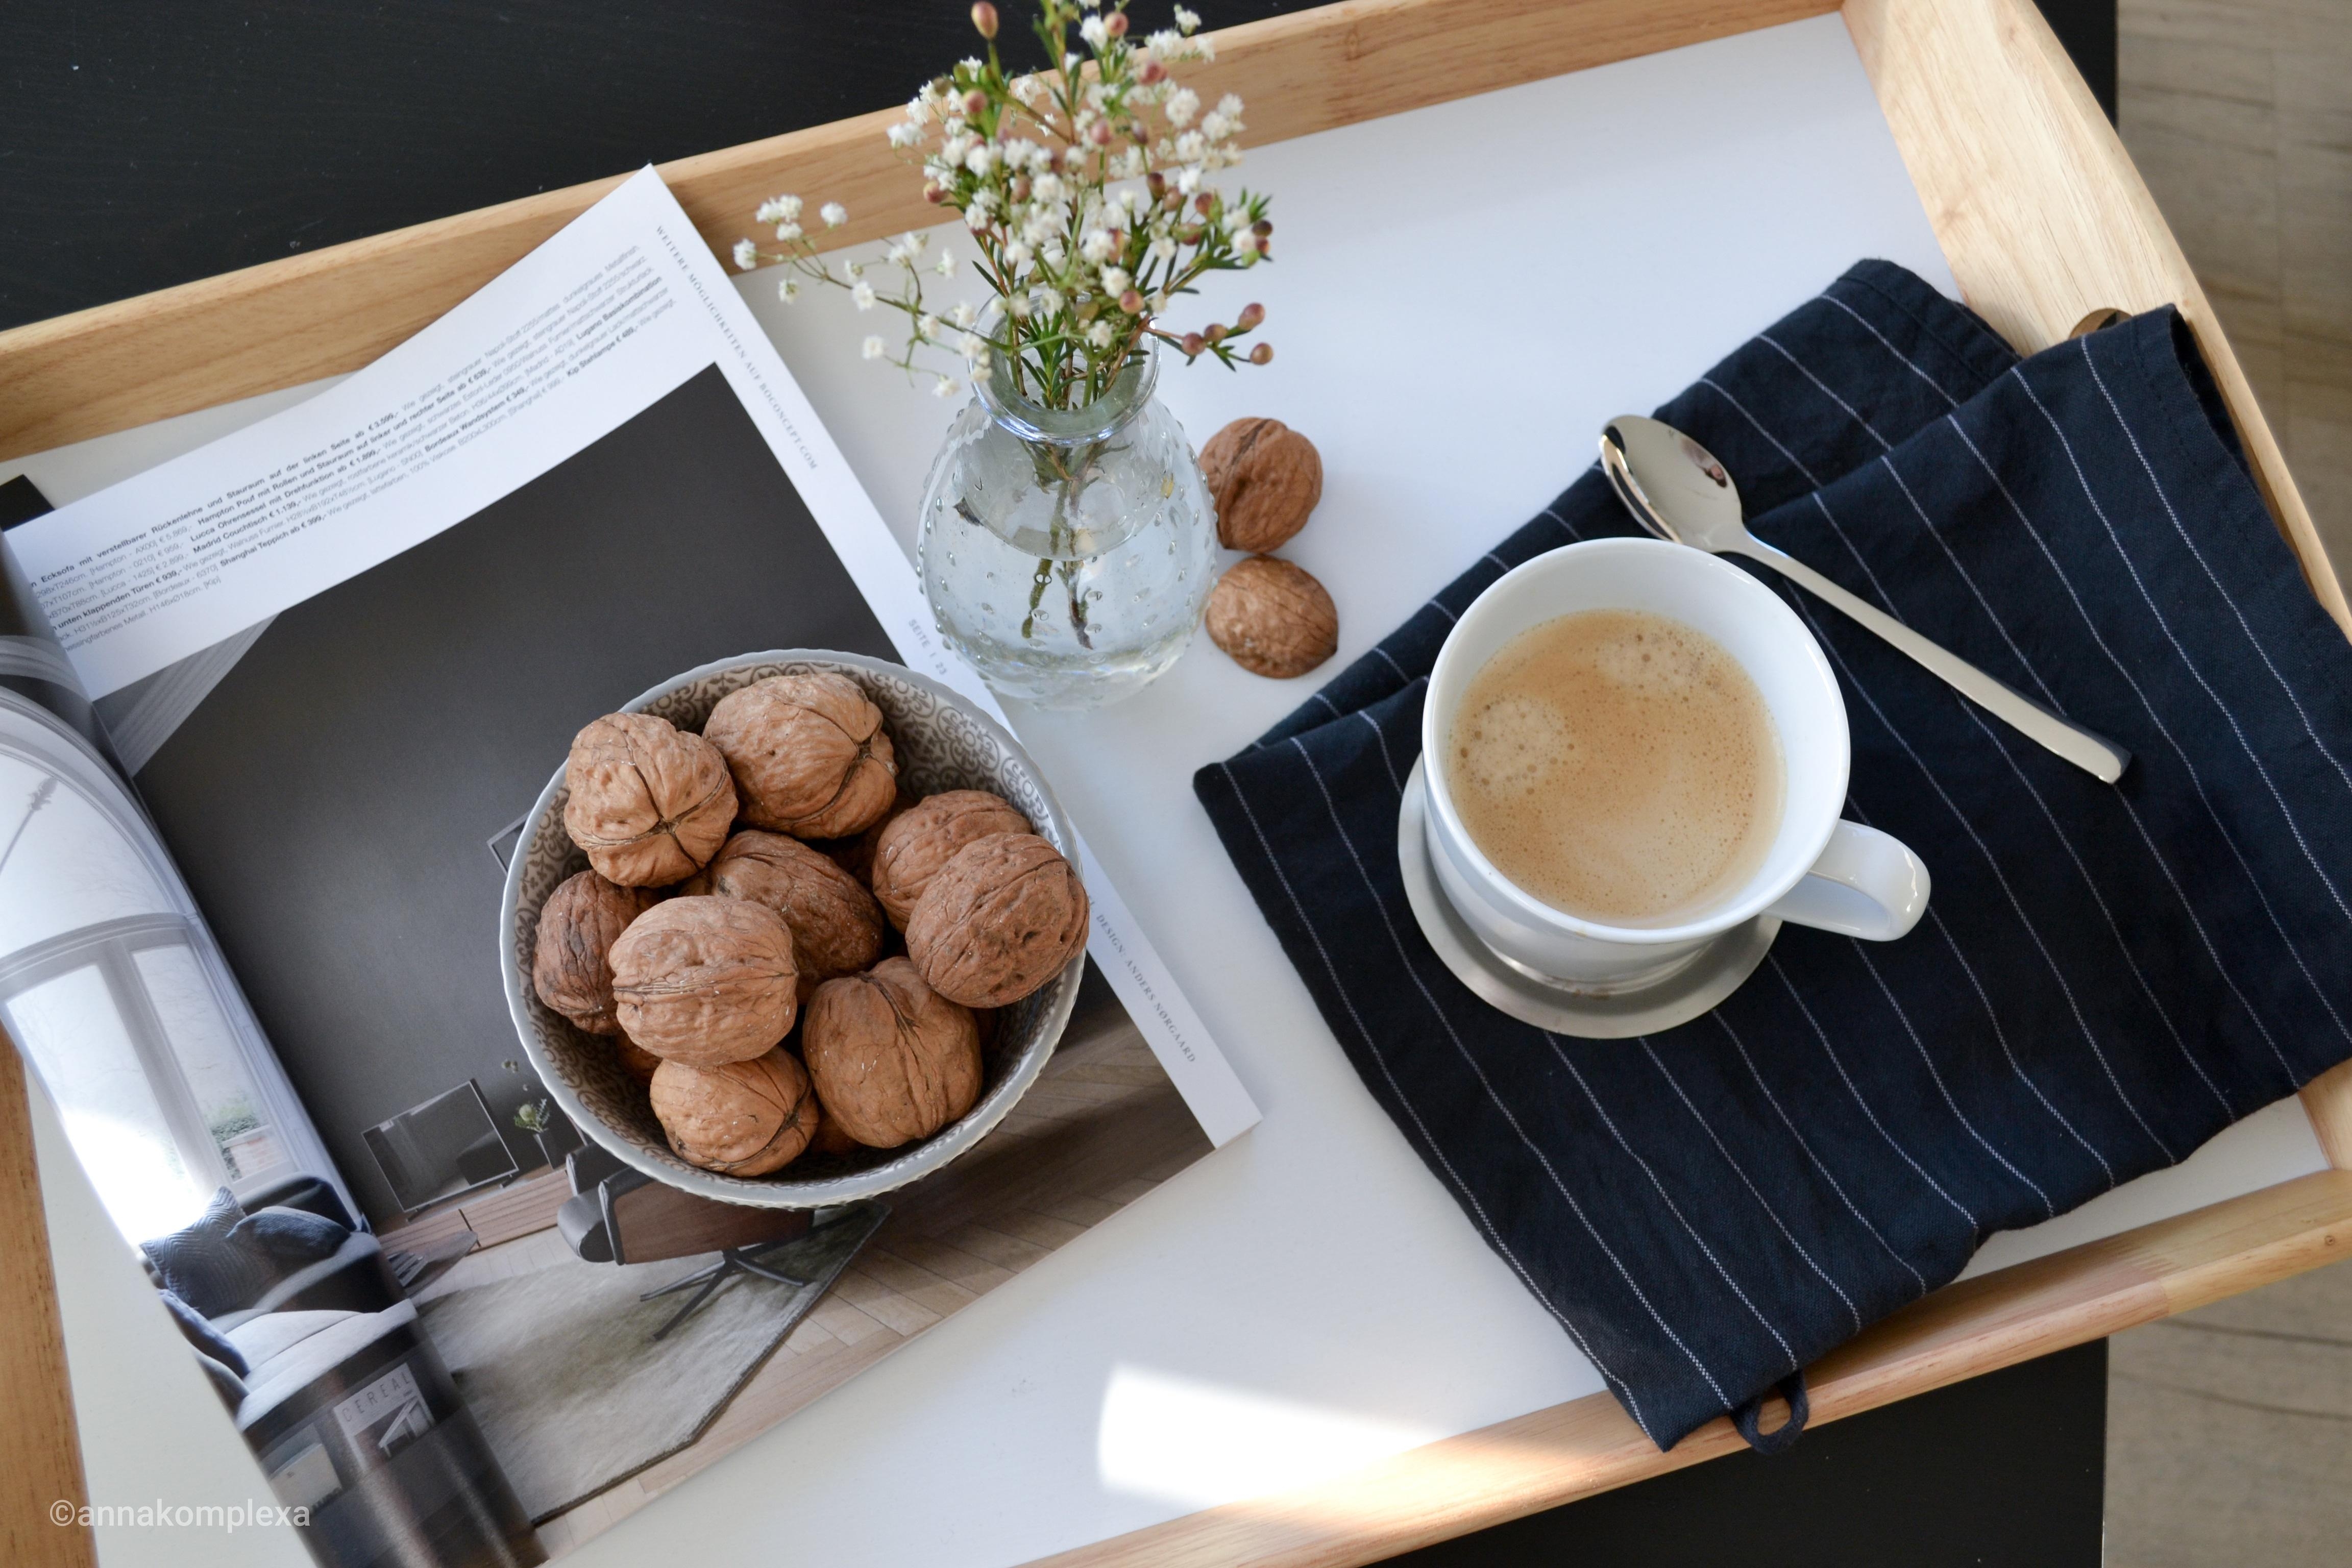 Endlich Sonne #skandinavisch #details #coffee #kaffeeliebe 